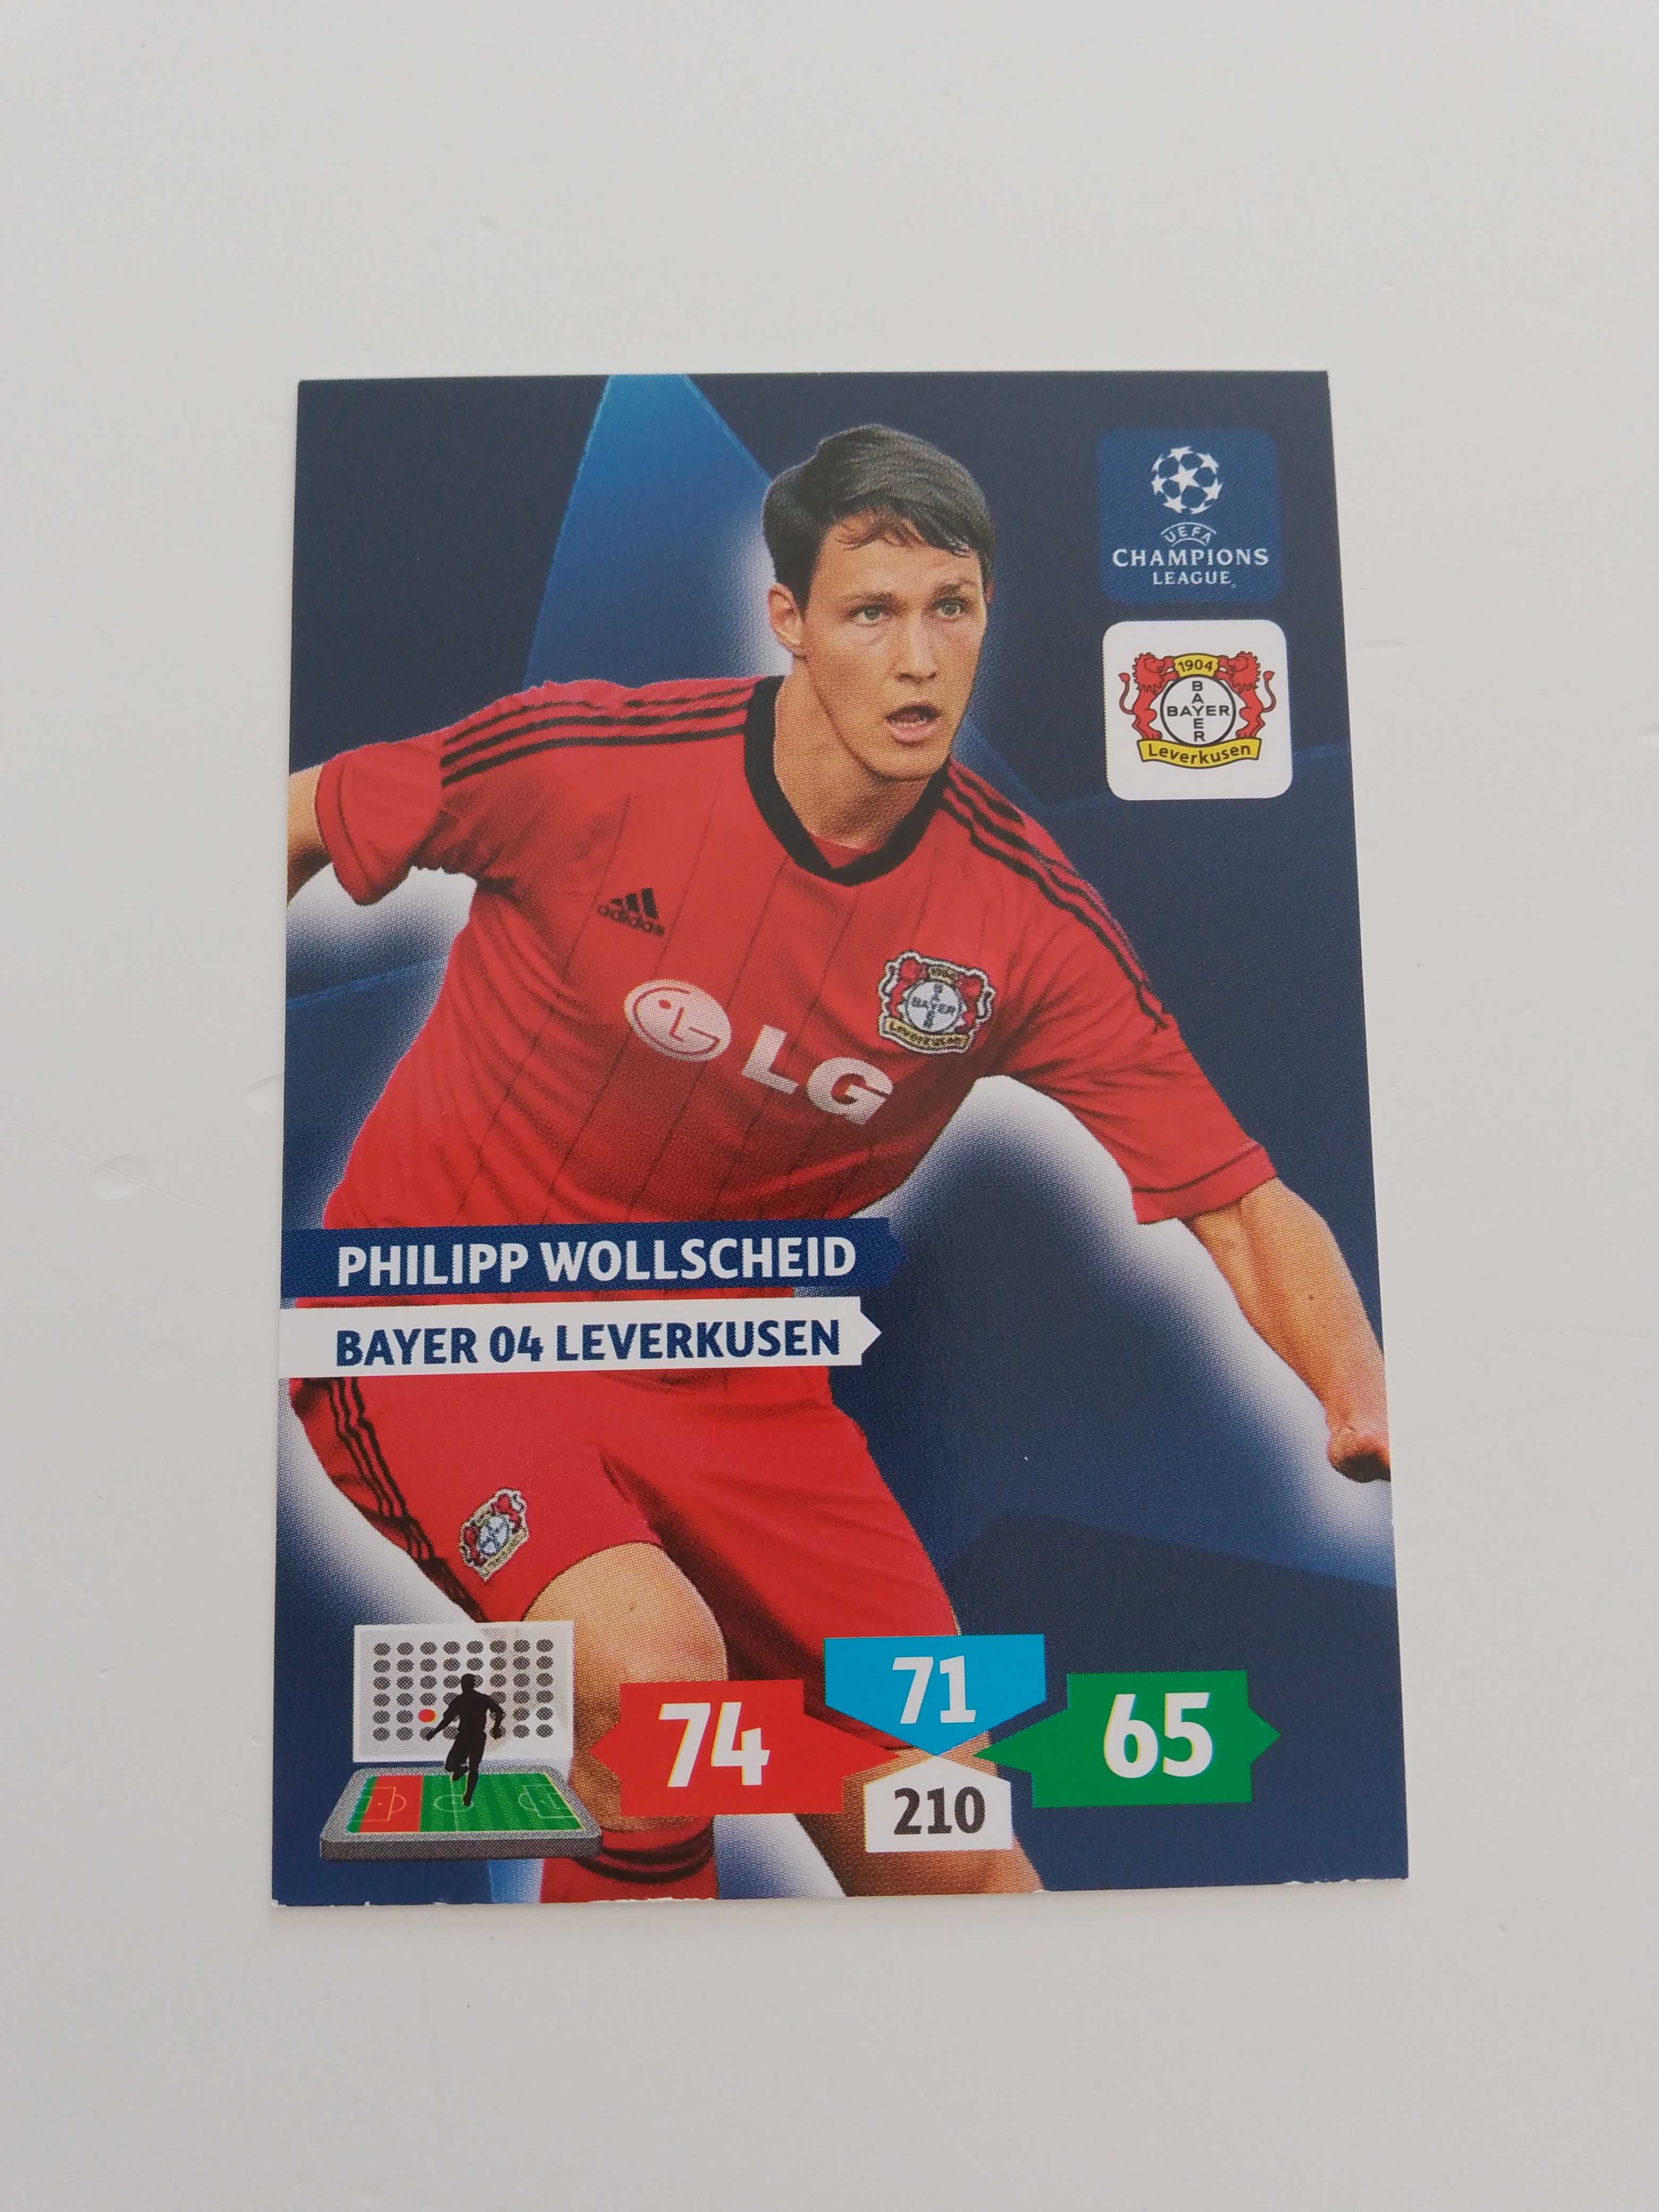 Philipp Wollscheid Bayer 04 Leverkusen Champions League 2013/14